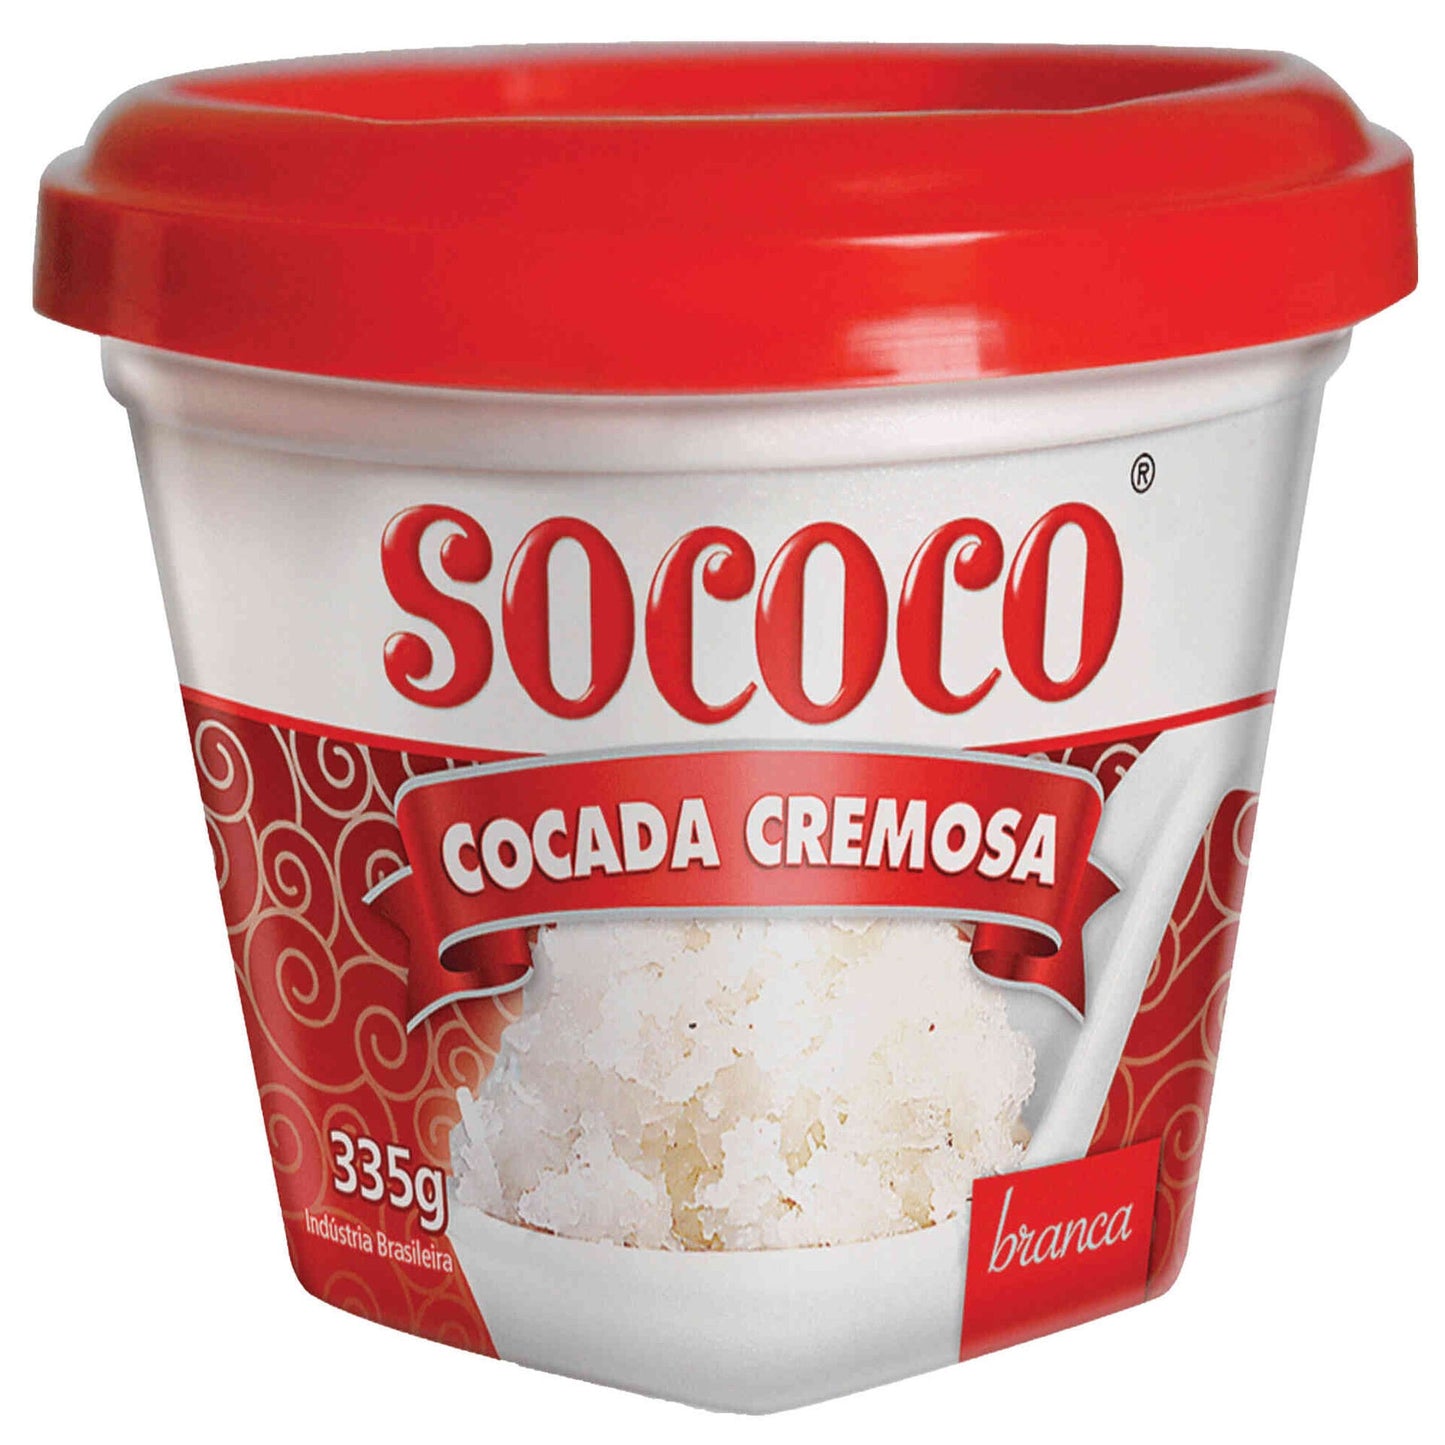 Cocada Cremosa Blanca Sococo emb. 335 gramos